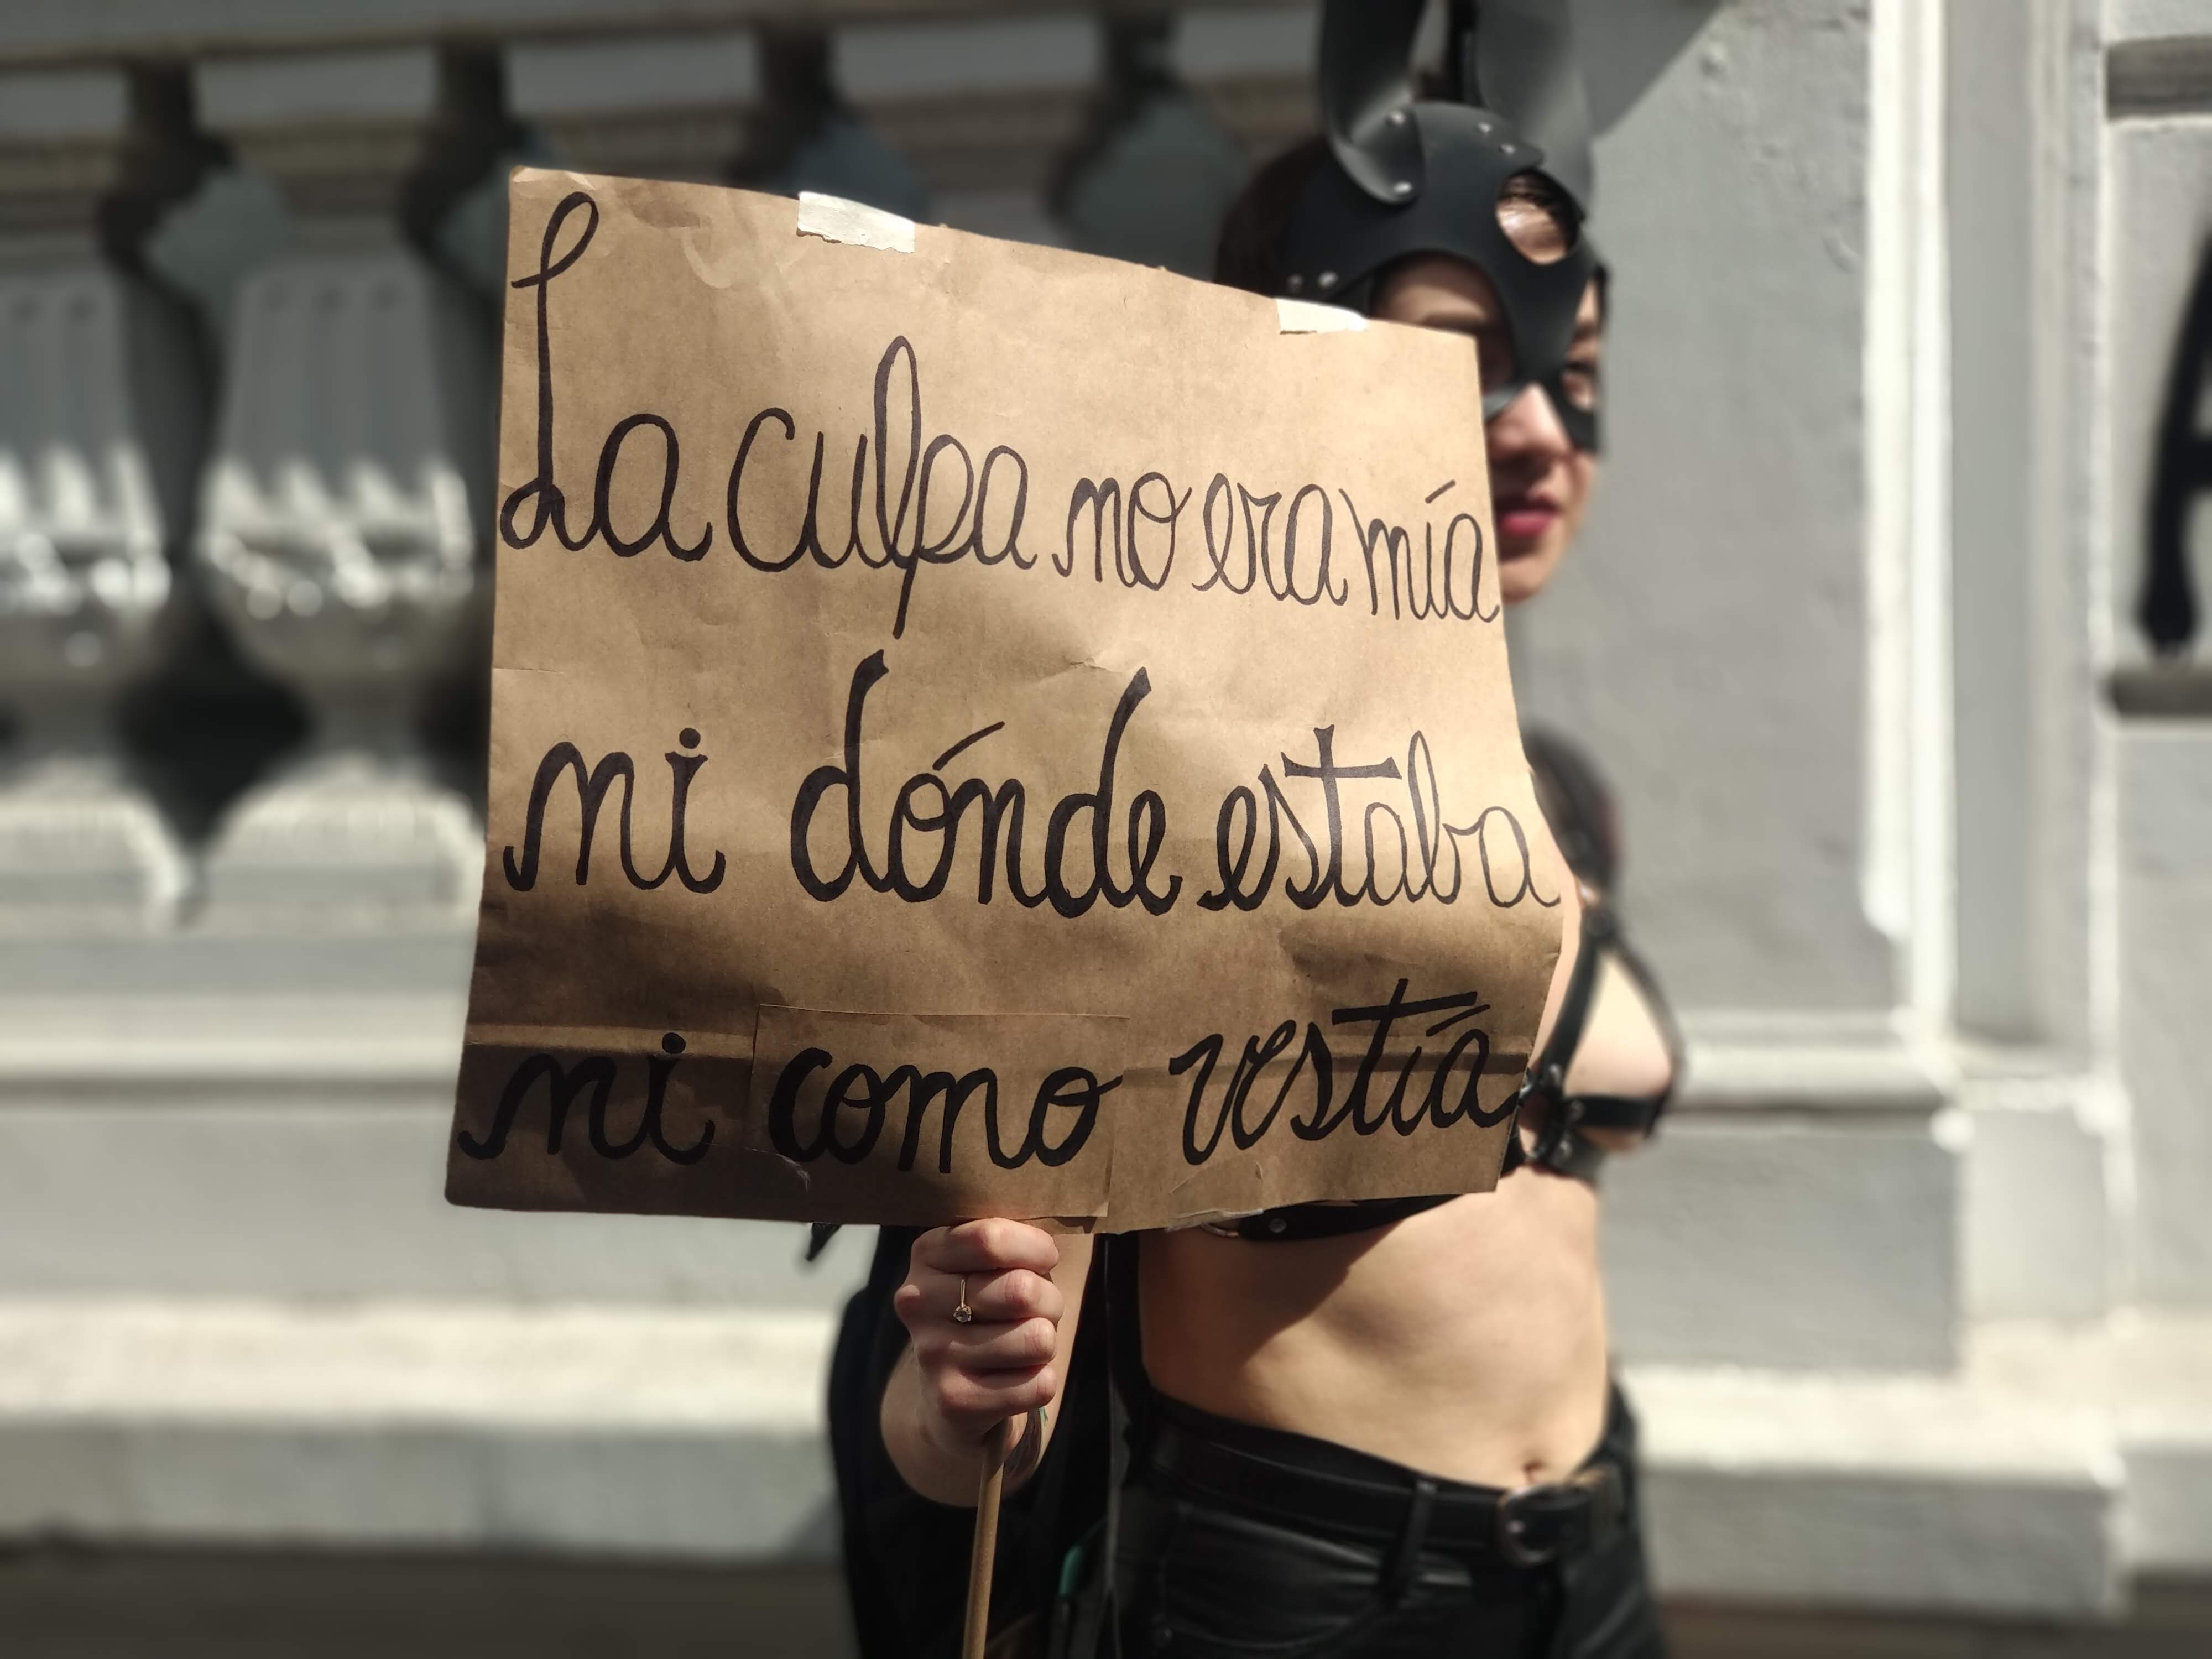 Una manifestante porta una pancarta, en Santiago de Chile, el 25 de noviembre de 2019. JAVIERA TAPIA